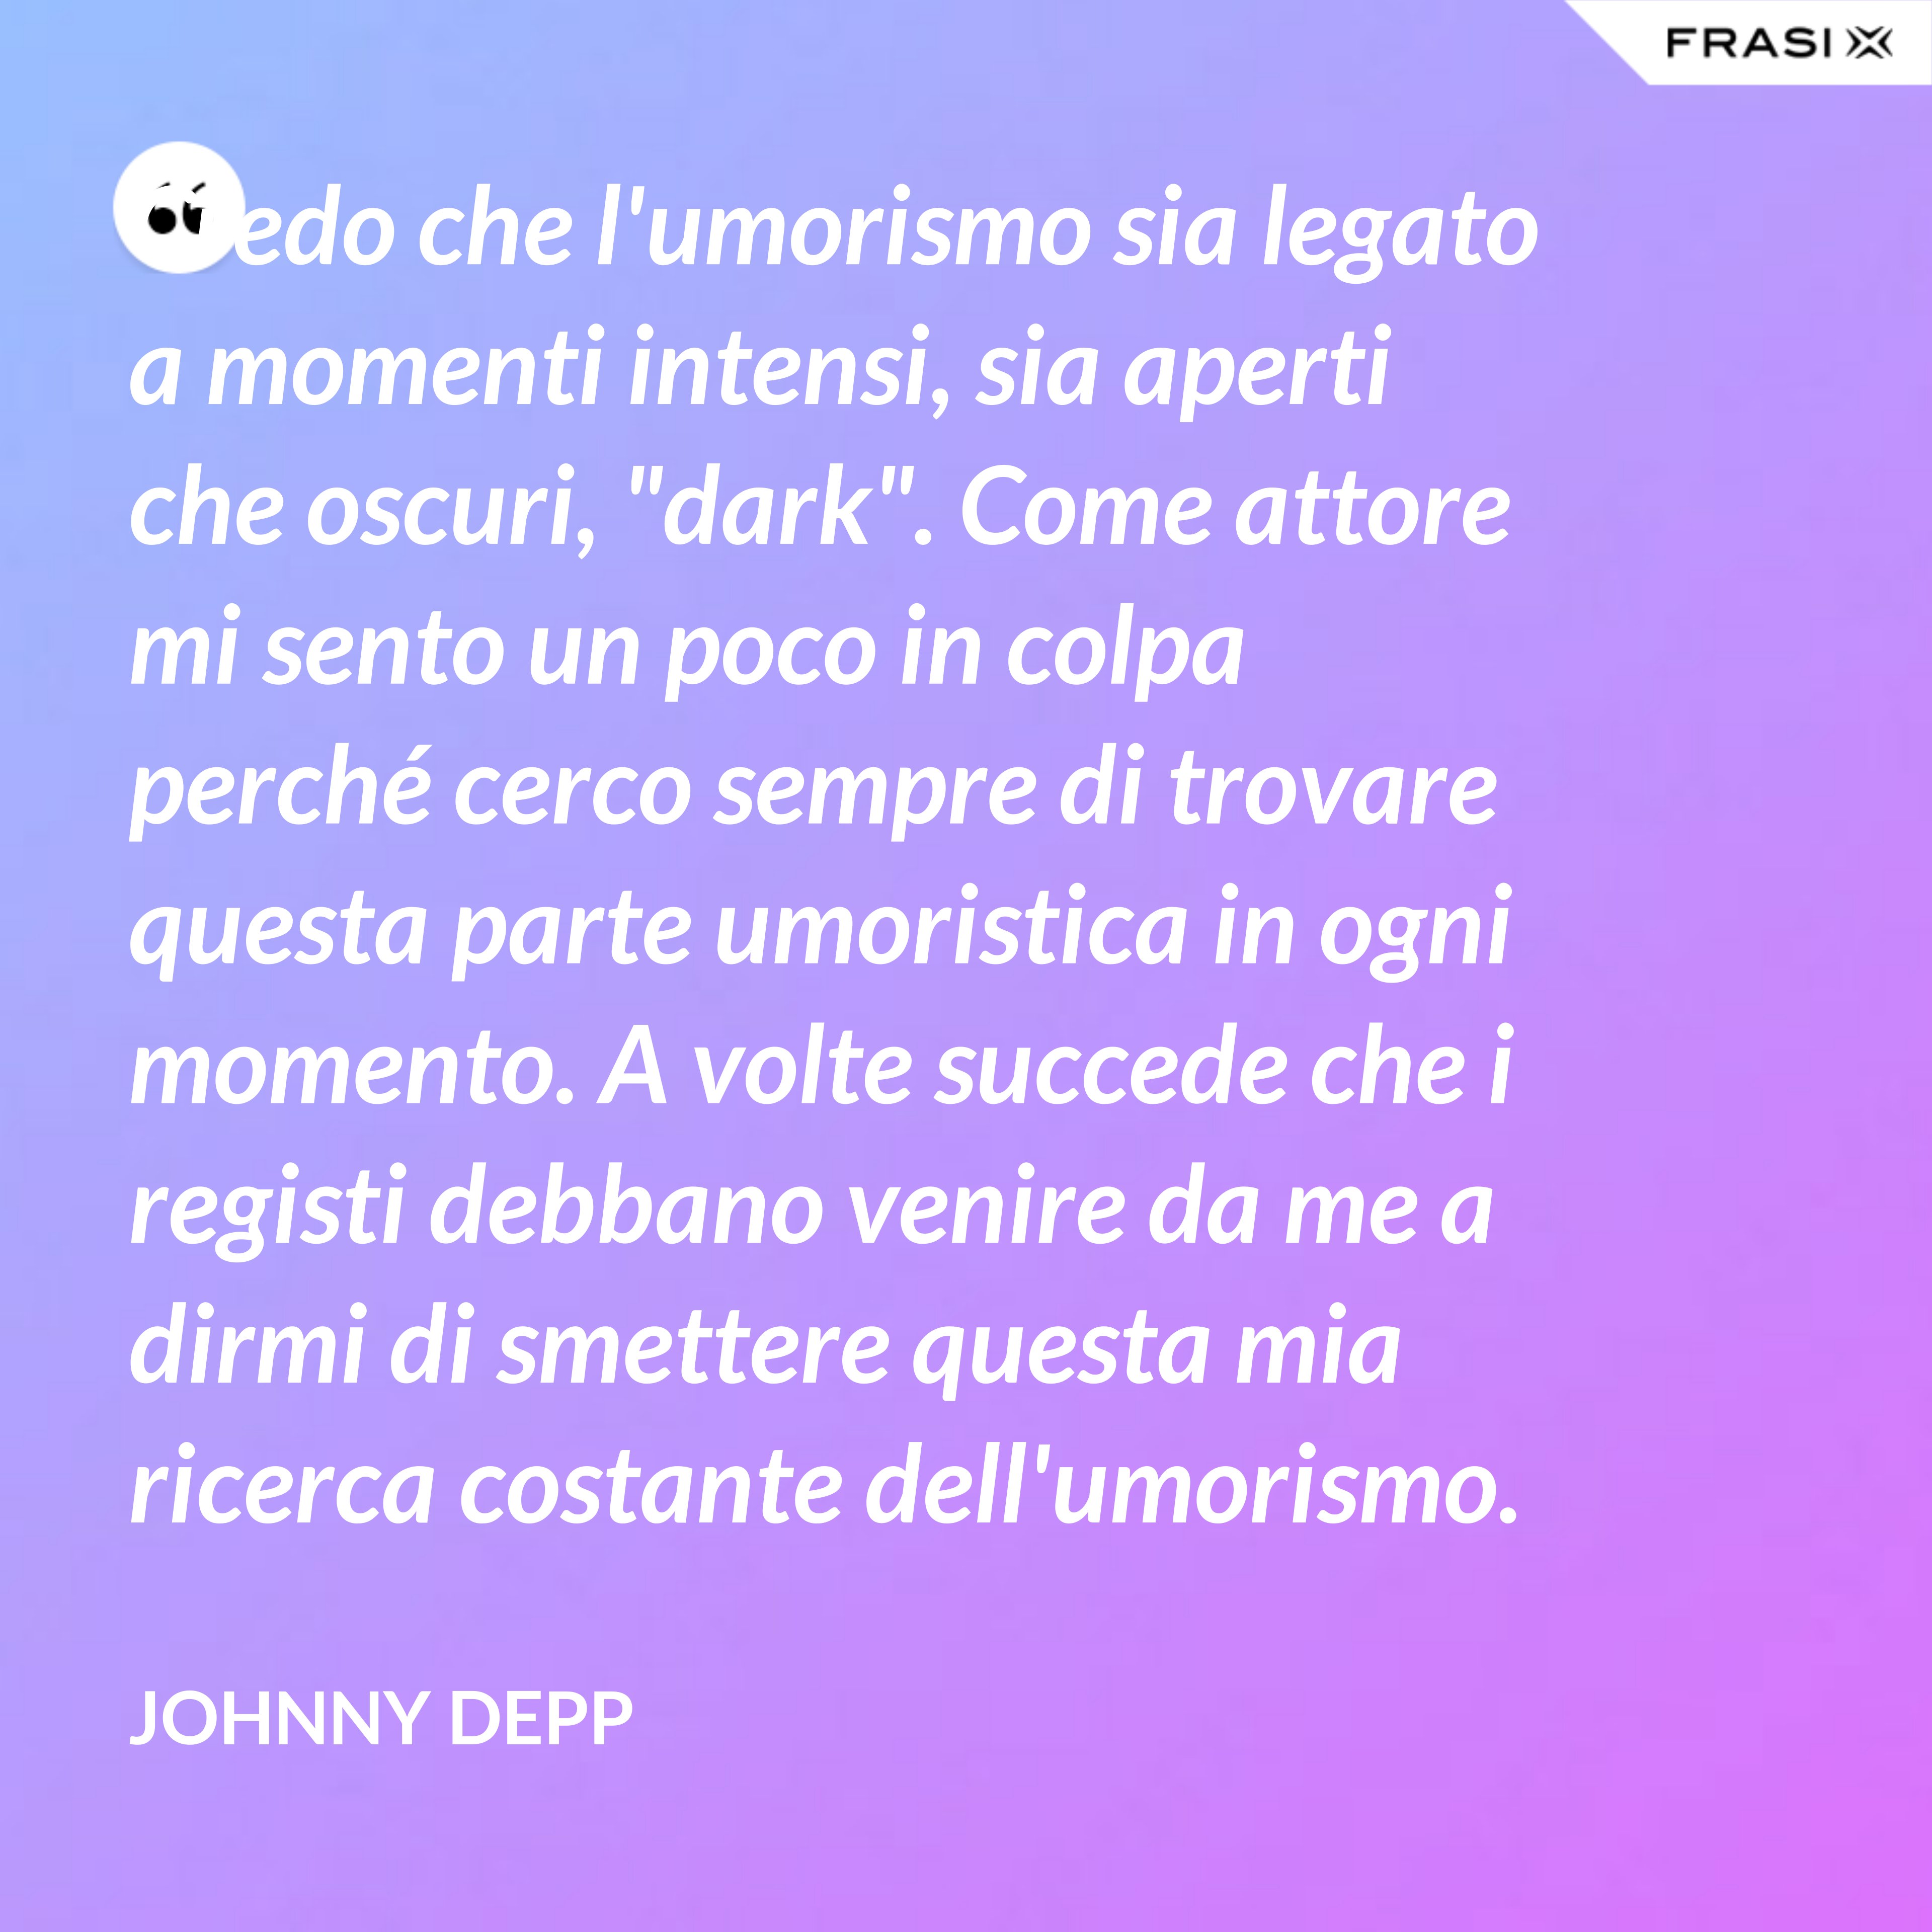 Credo che l'umorismo sia legato a momenti intensi, sia aperti che oscuri, "dark". Come attore mi sento un poco in colpa perché cerco sempre di trovare questa parte umoristica in ogni momento. A volte succede che i registi debbano venire da me a dirmi di smettere questa mia ricerca costante dell'umorismo. - Johnny Depp